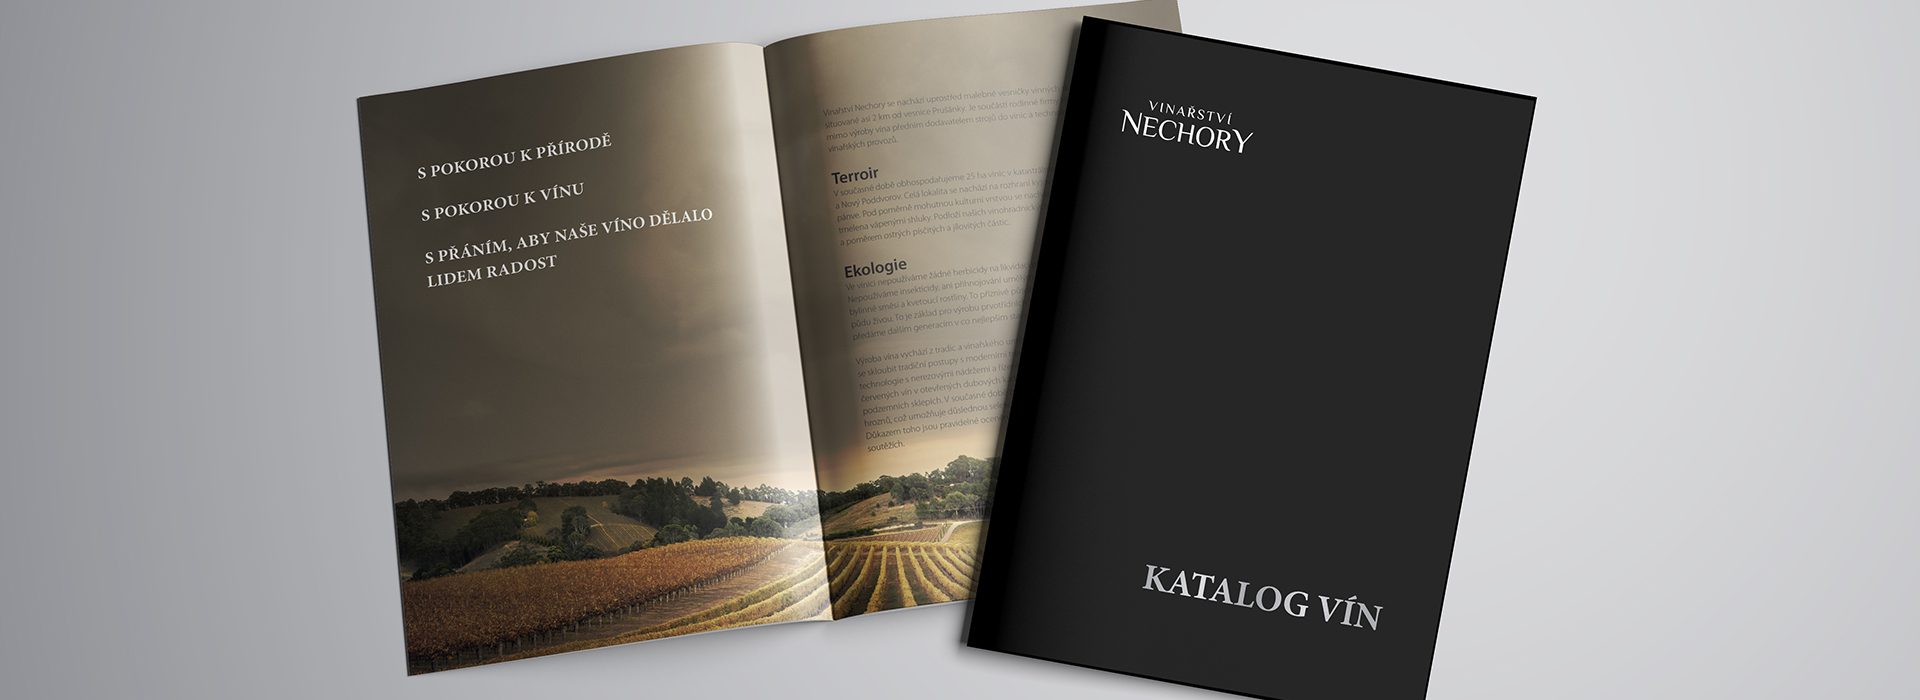 Katalog vín pro Vinařství NECHORY